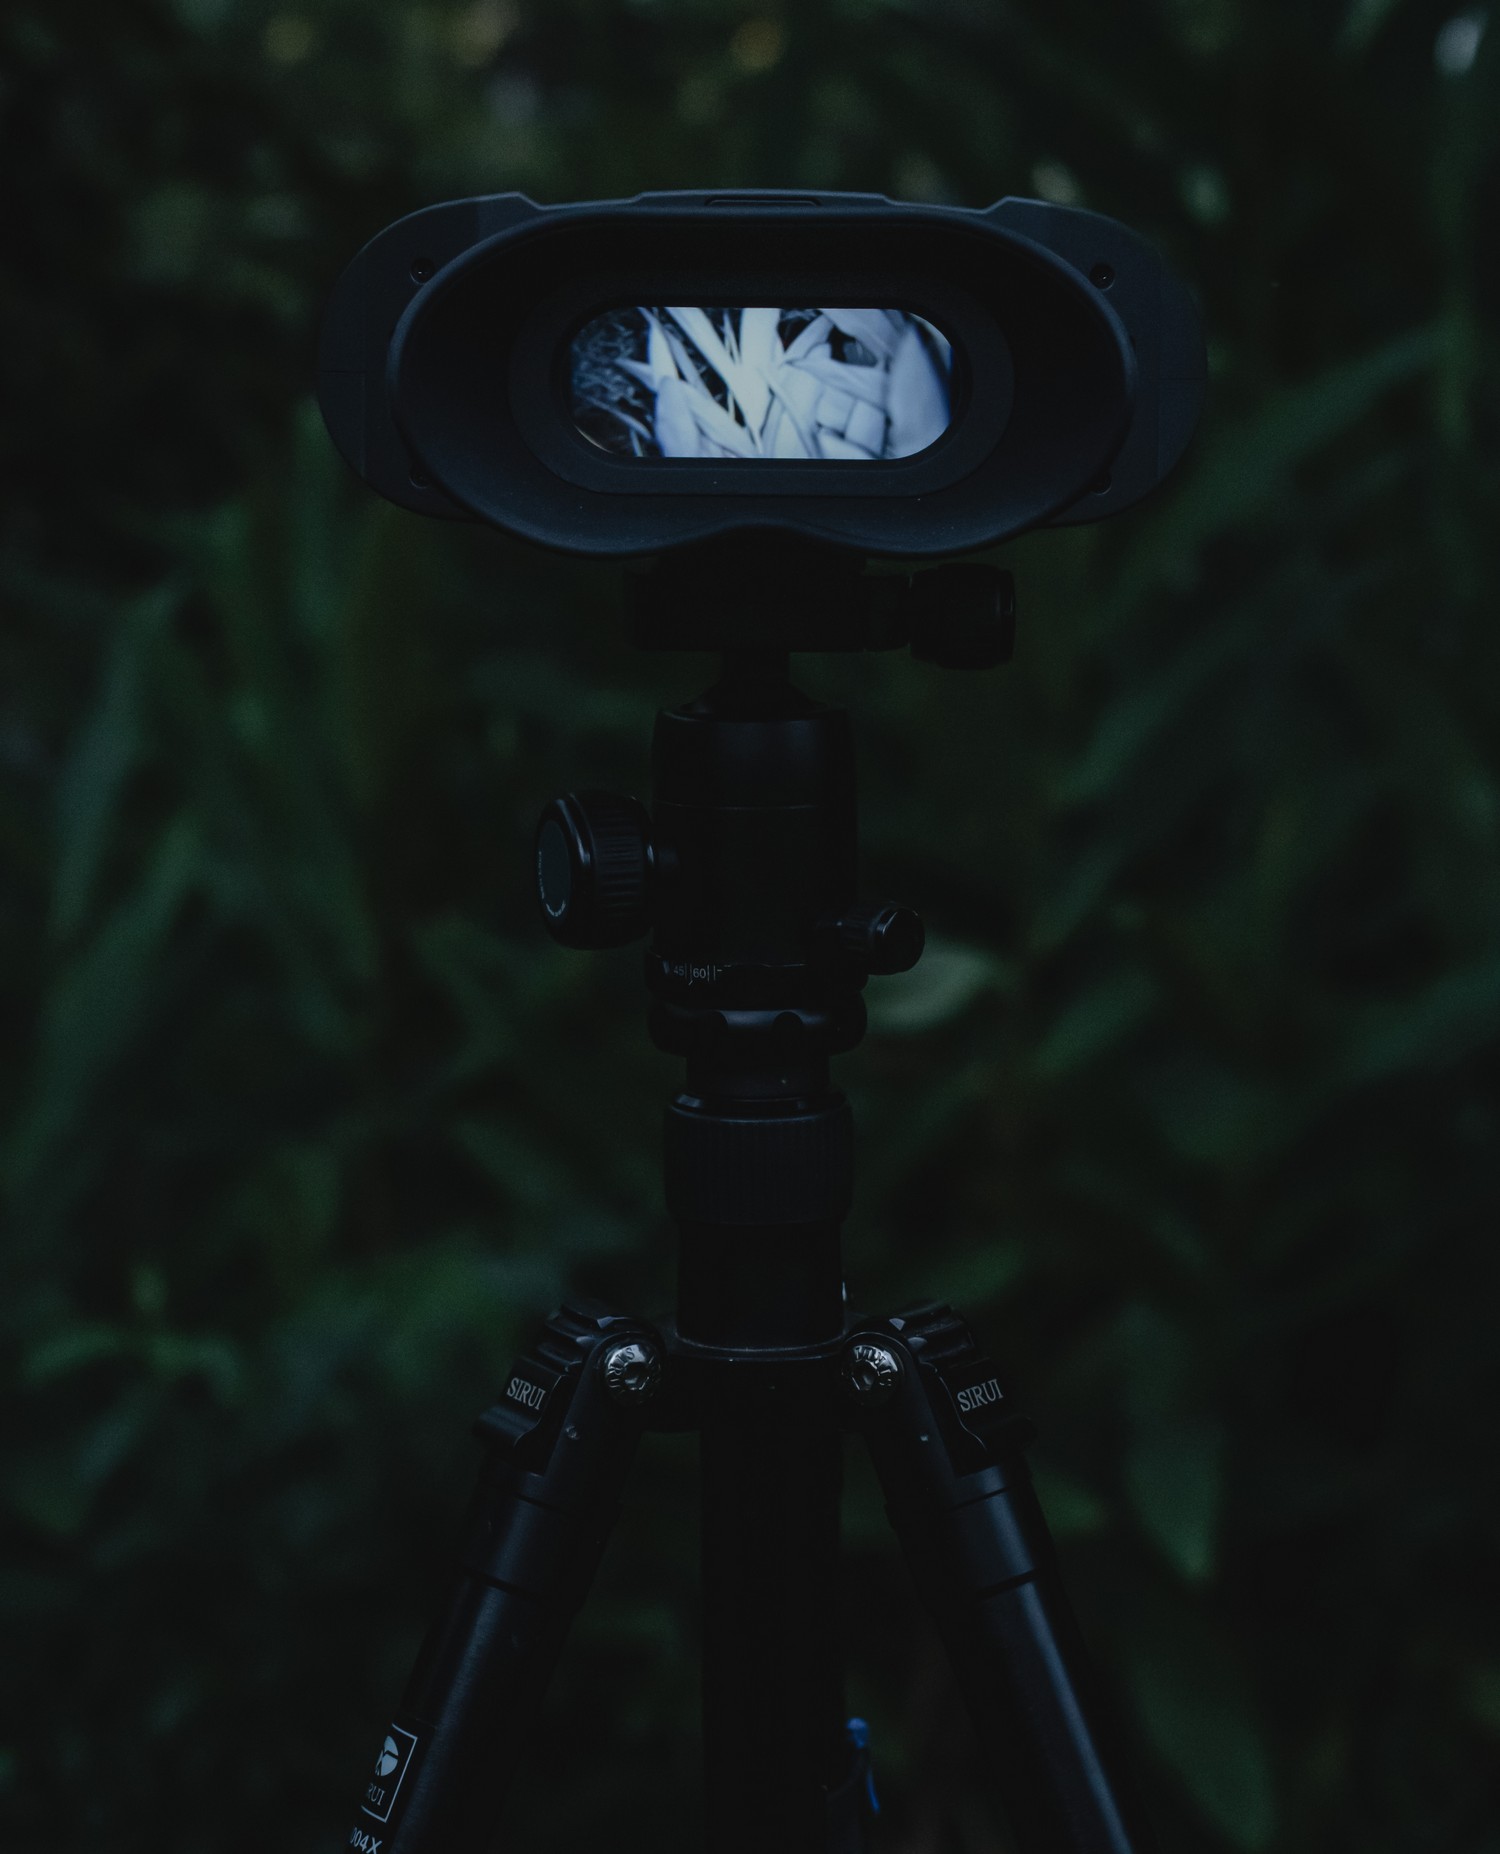 การมองเห็นได้ในเวลากลางคืน NVB 200 - สลับโหมดกลางวันและกลางคืนแบบคู่อัตโนมัติ